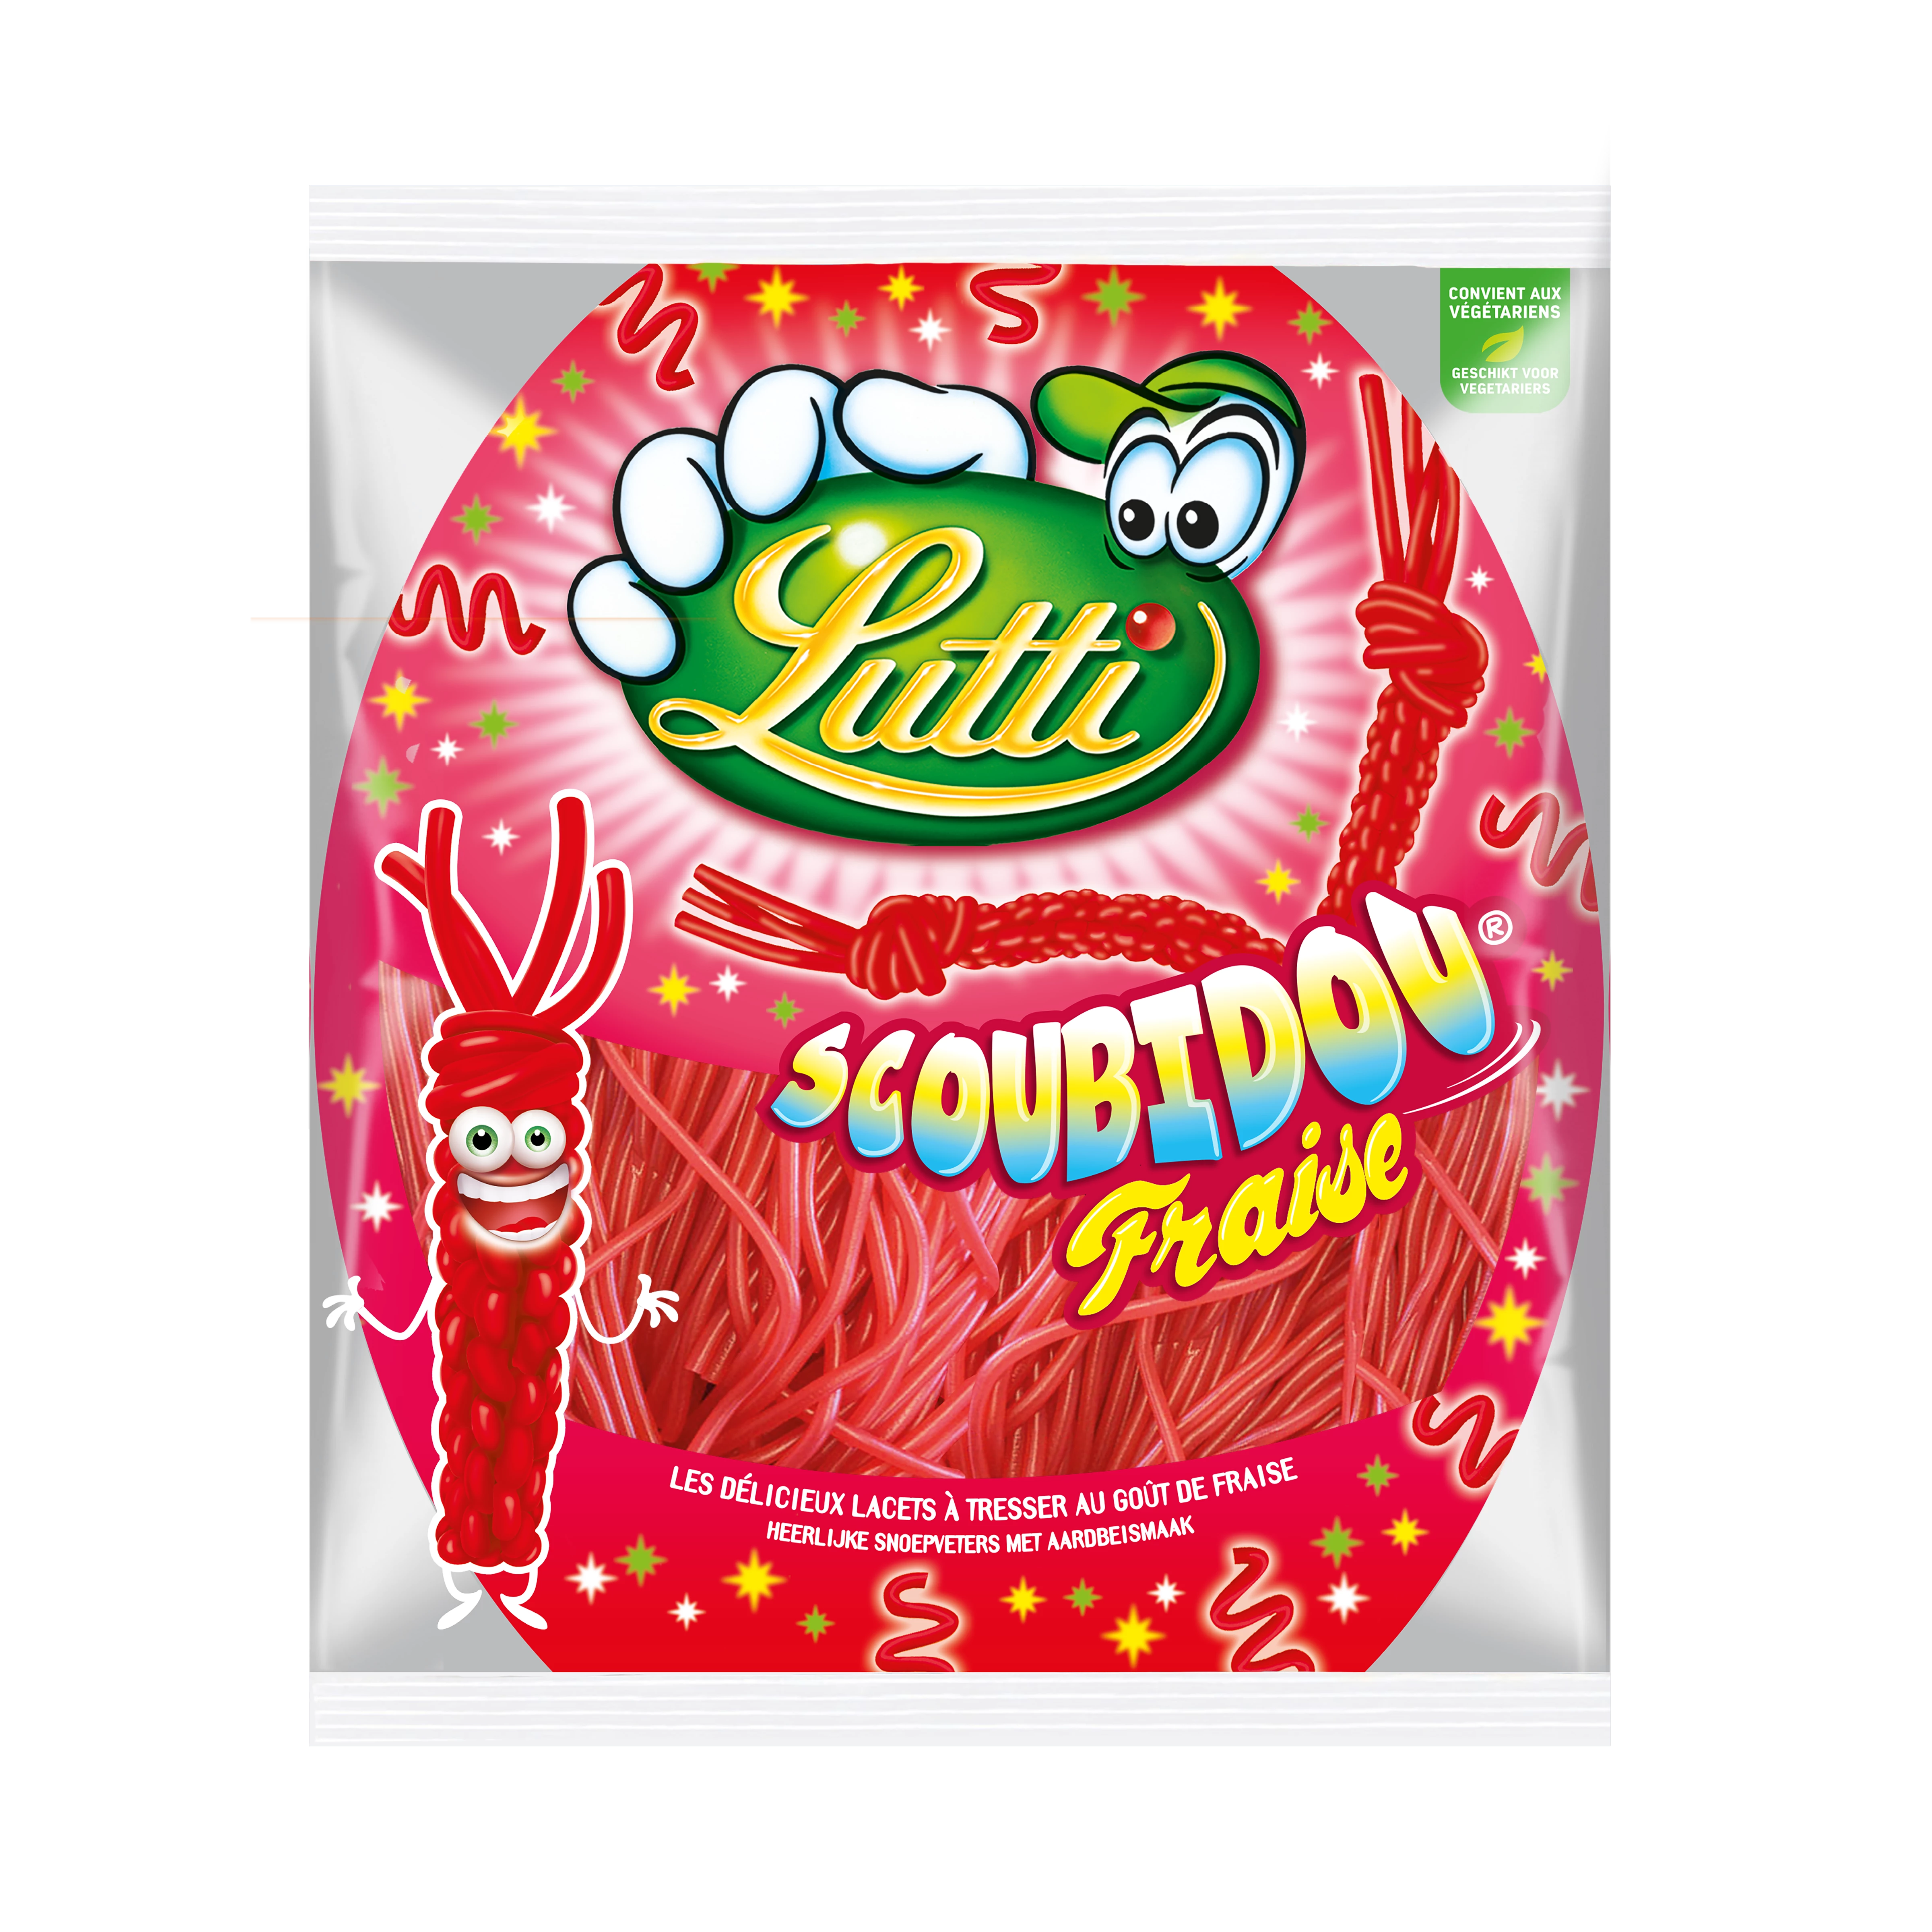 Scoubidou Strawberry Candy; 200g - LUTTI